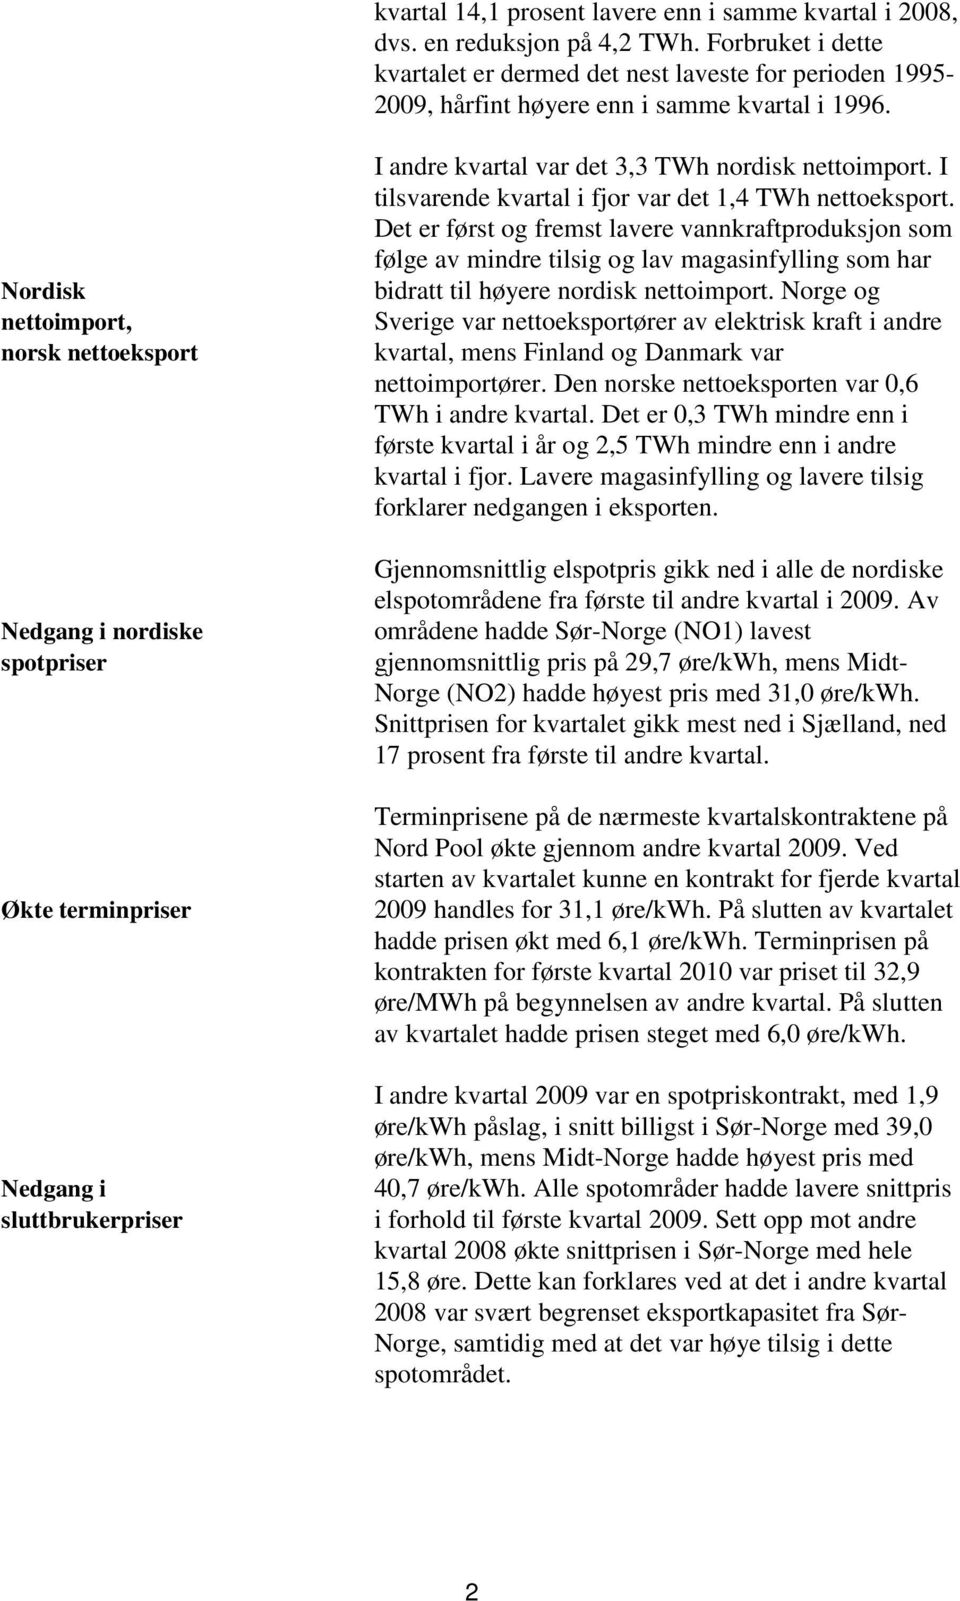 Nordisk nettoimport, norsk nettoeksport Nedgang i nordiske spotpriser Økte terminpriser Nedgang i sluttbrukerpriser I andre kvartal var det 3,3 TWh nordisk nettoimport.